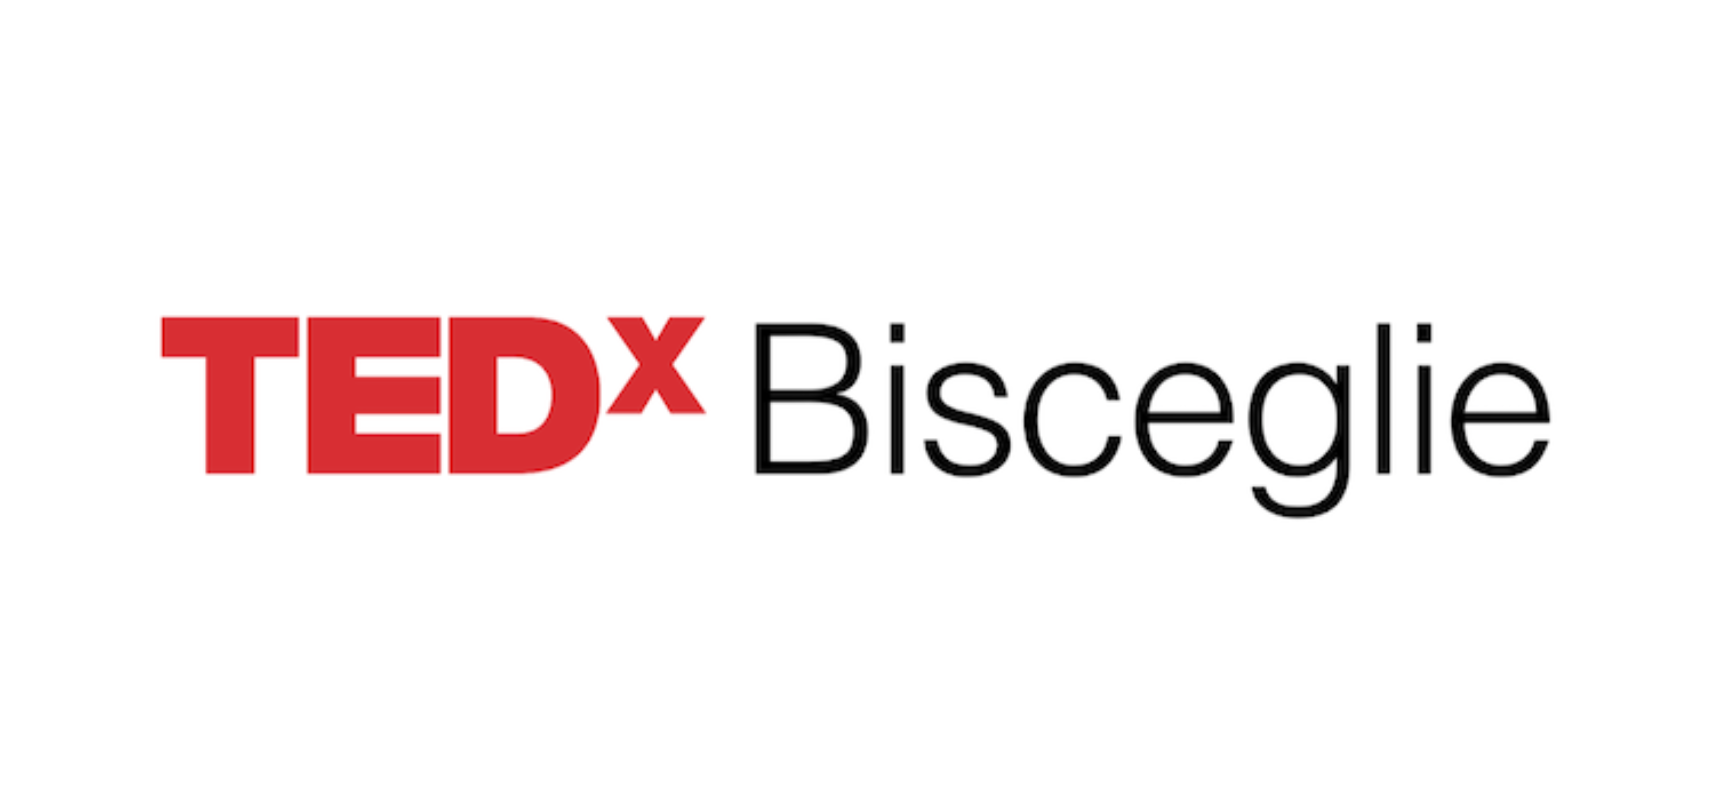 Tutto pronto per la prima edizione di TEDxBisceglie: dieci speaker sul tema dei “Nuovi Inizi”